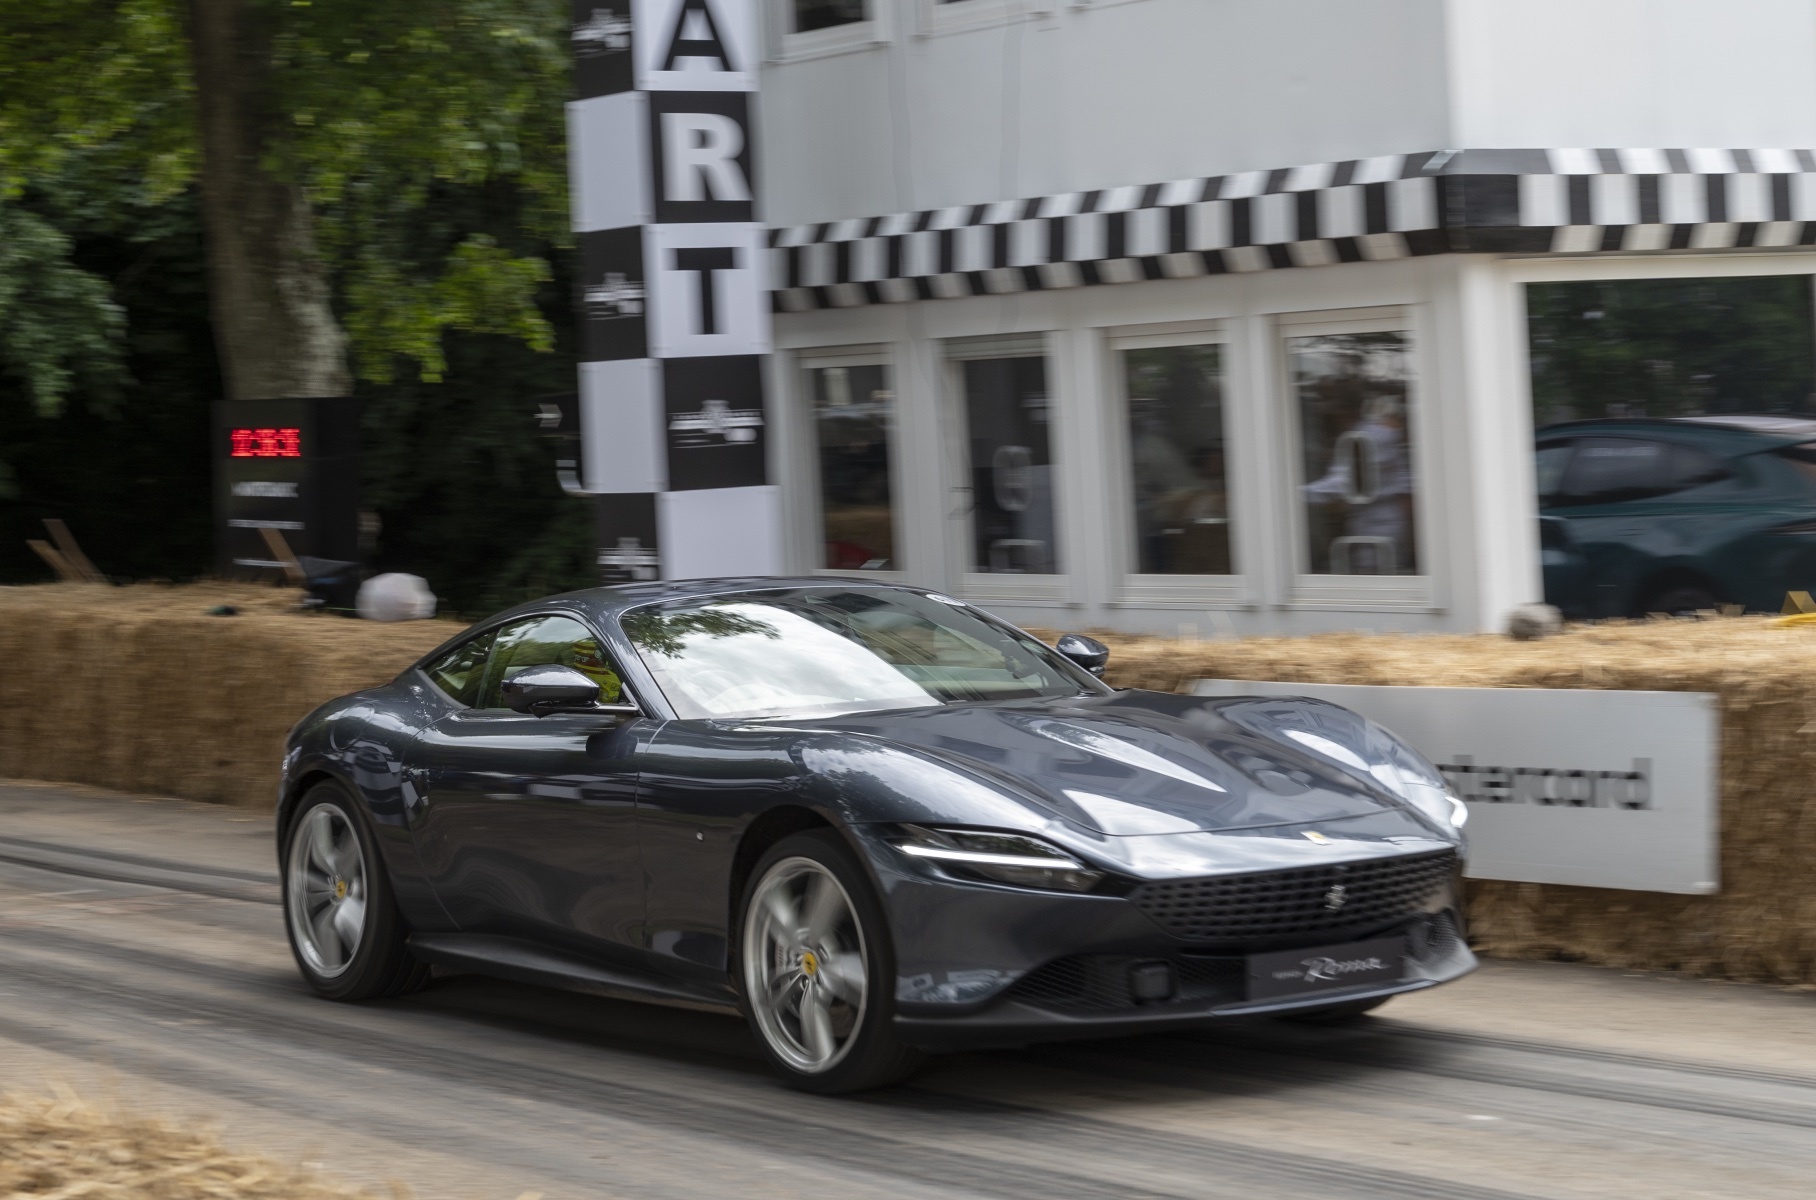 Суперкары, рестомоды и классика: гид «Мотора» по Фестивалю скорости в Гудвуде